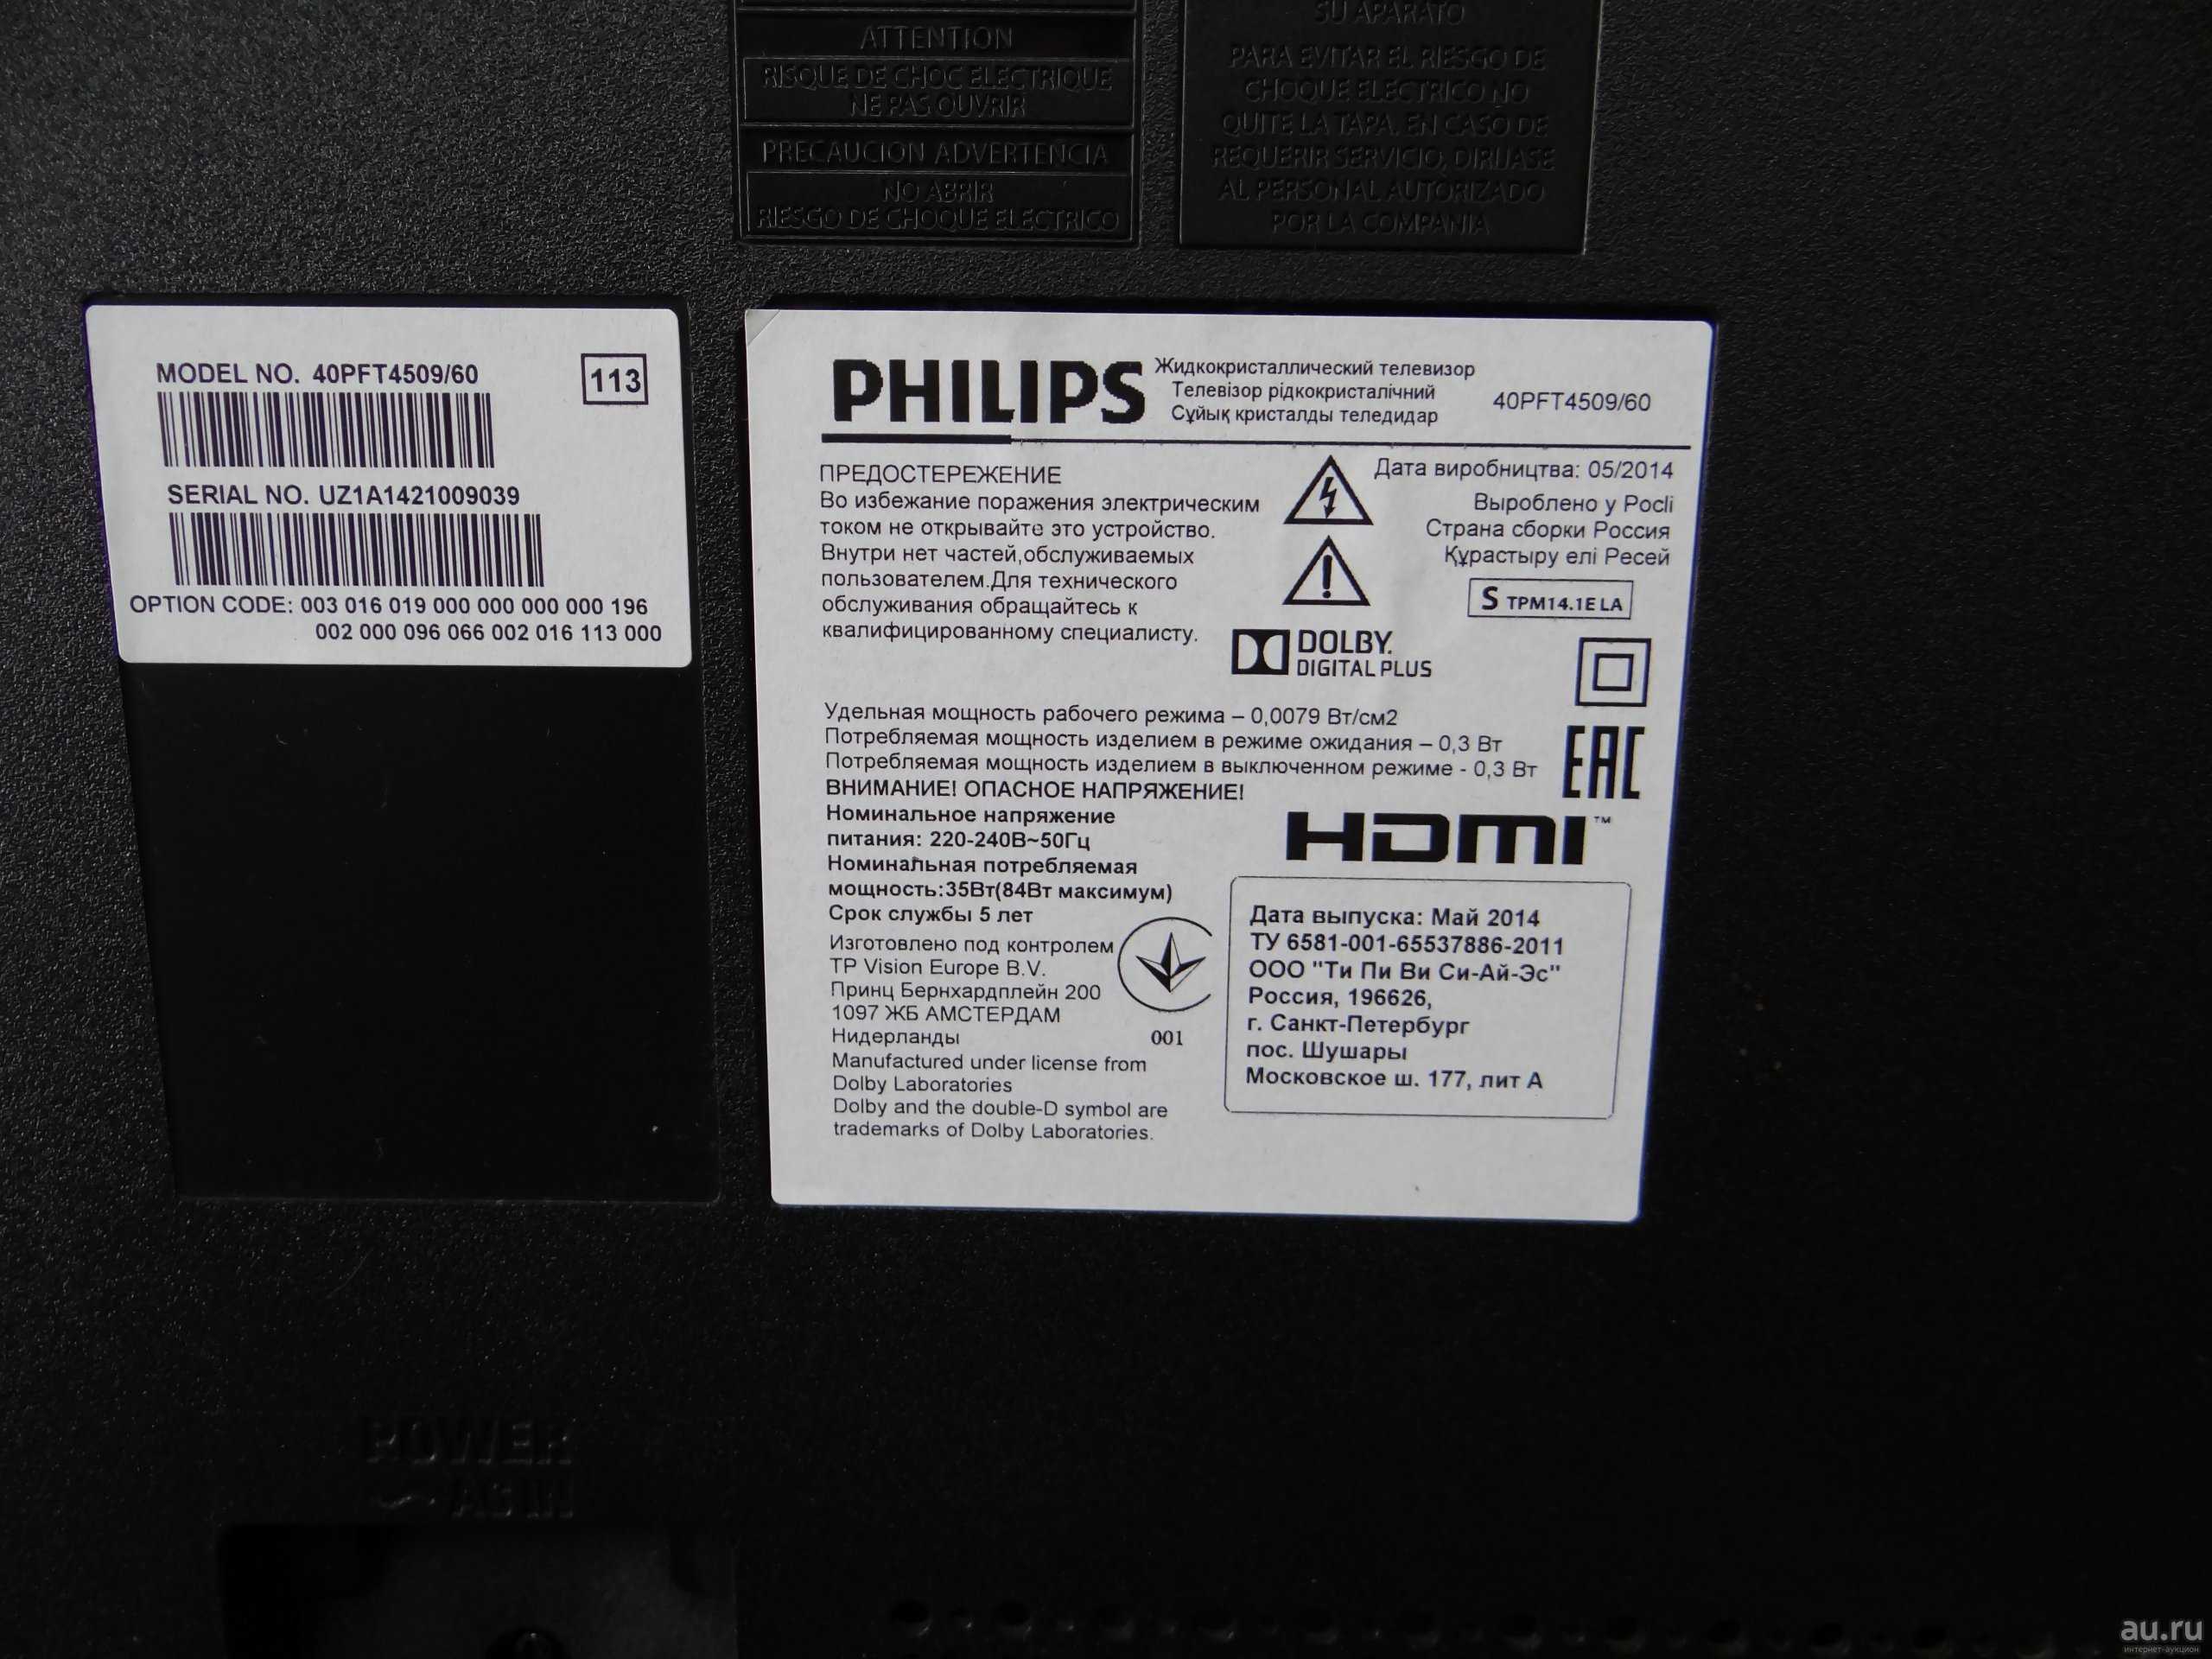 Philips 40pft4509 - купить , скидки, цена, отзывы, обзор, характеристики - телевизоры